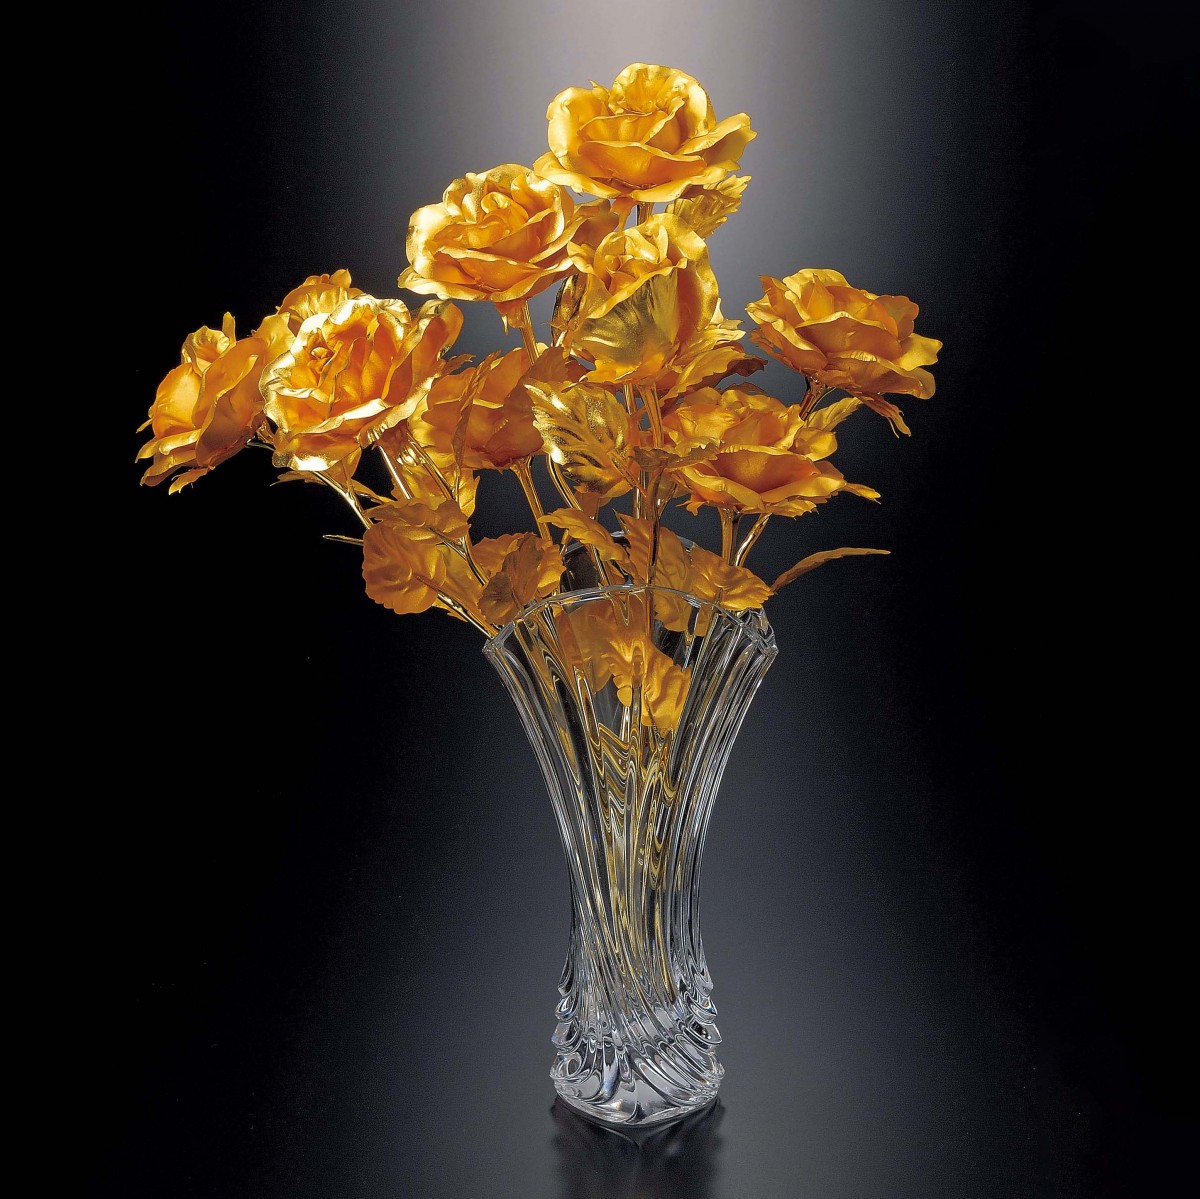 純金箔貼り『永遠の黄金のバラ』10本組 ガラス花瓶 付 - 【東京書芸